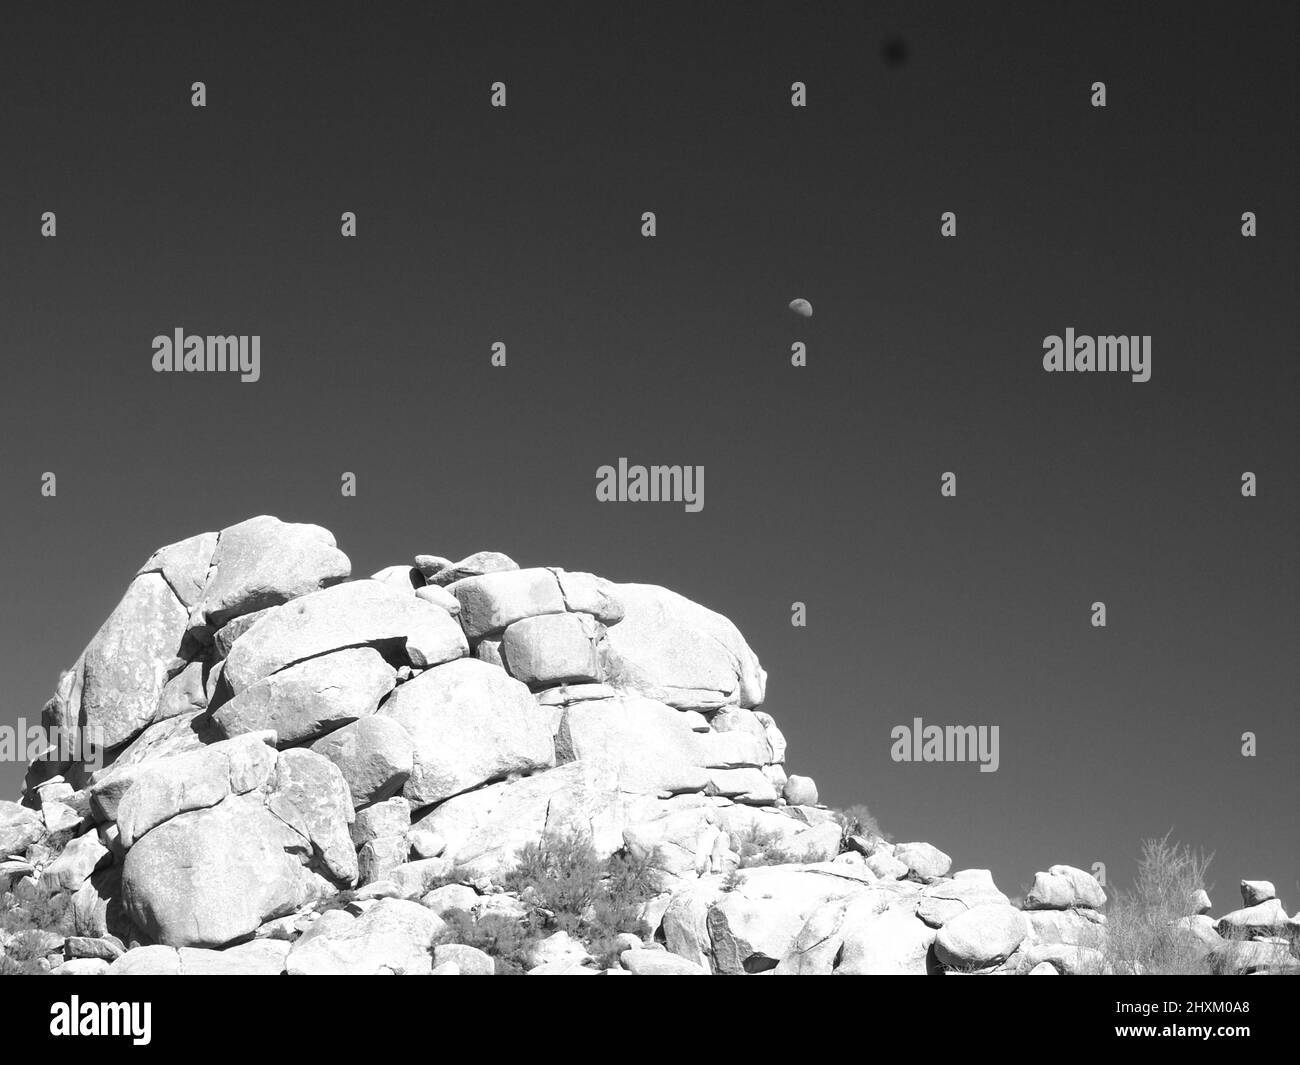 Schwarz-weiße Wüstenlandschaften in Arizona. Gezeigt werden der Superstition Mountain und seine „betende Hände“-Formation sowie ein Mond über dem Wüstenberg. Stockfoto